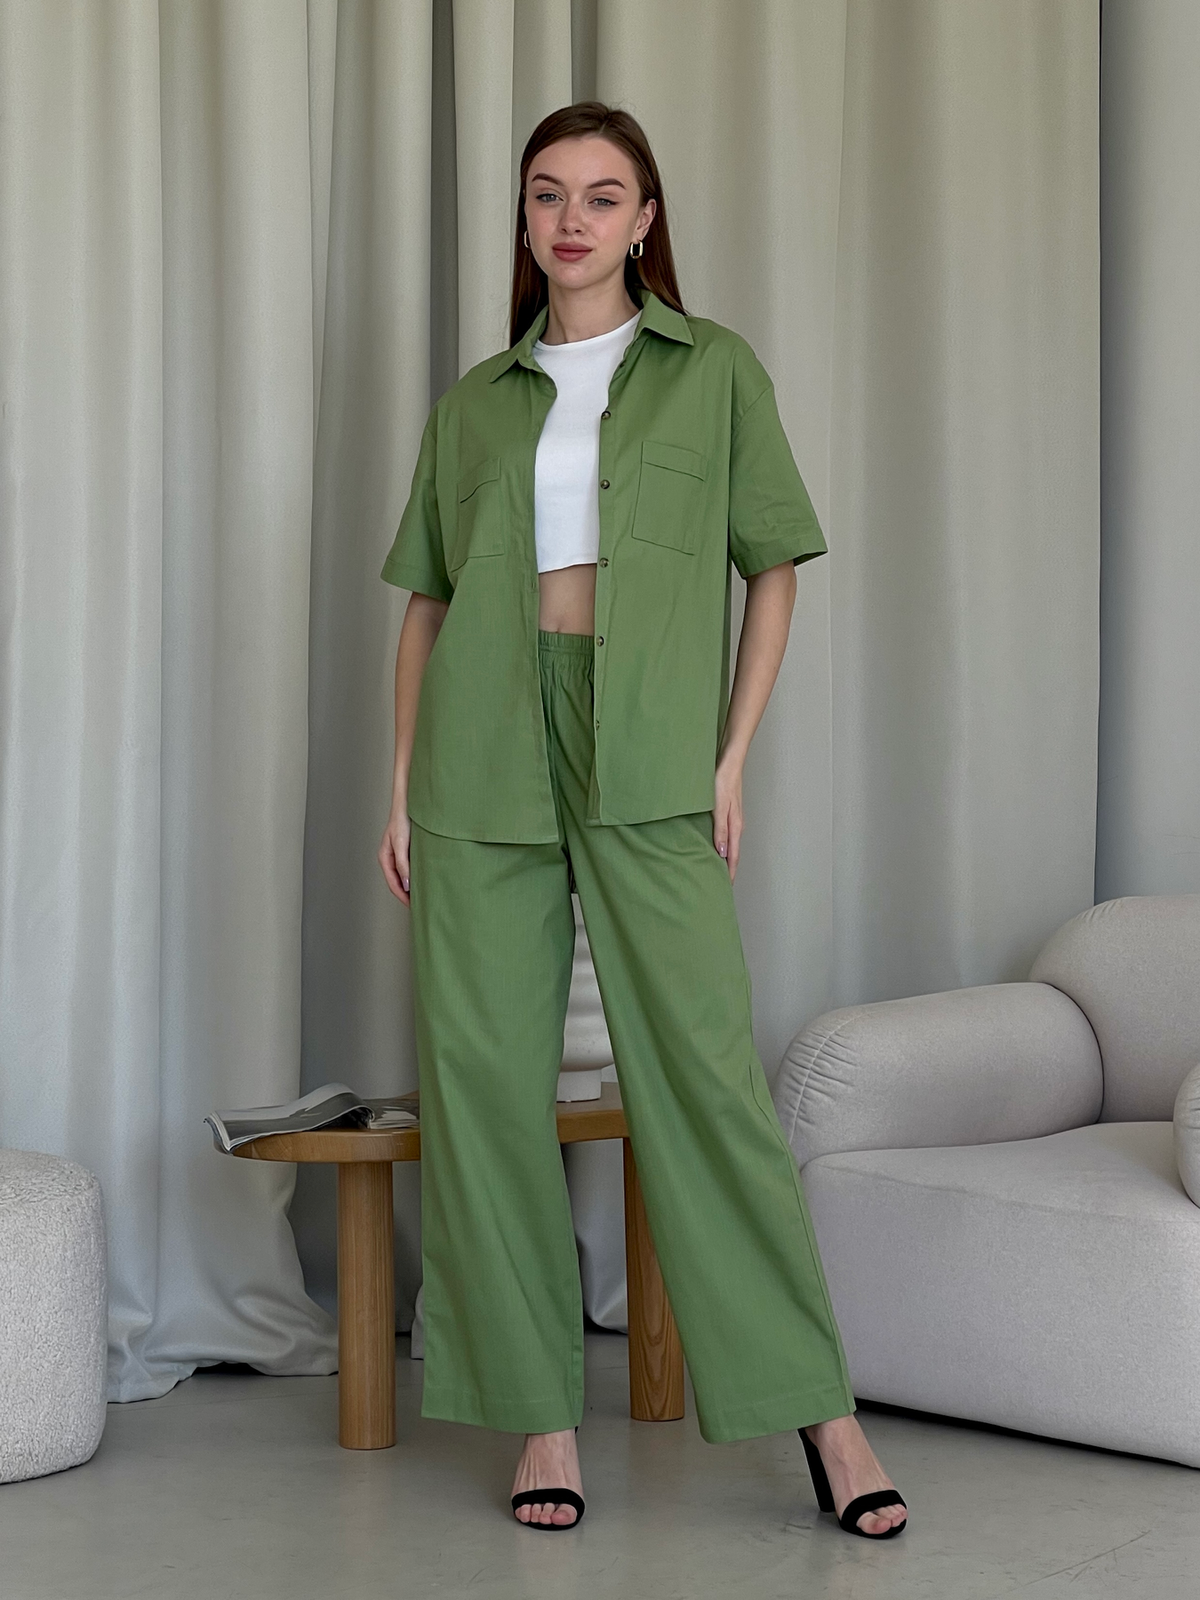 Купить Льняная рубашка с коротким рукавом зеленая Merlini Нино 200001205 размер 42-44 (S-M) в интернет-магазине